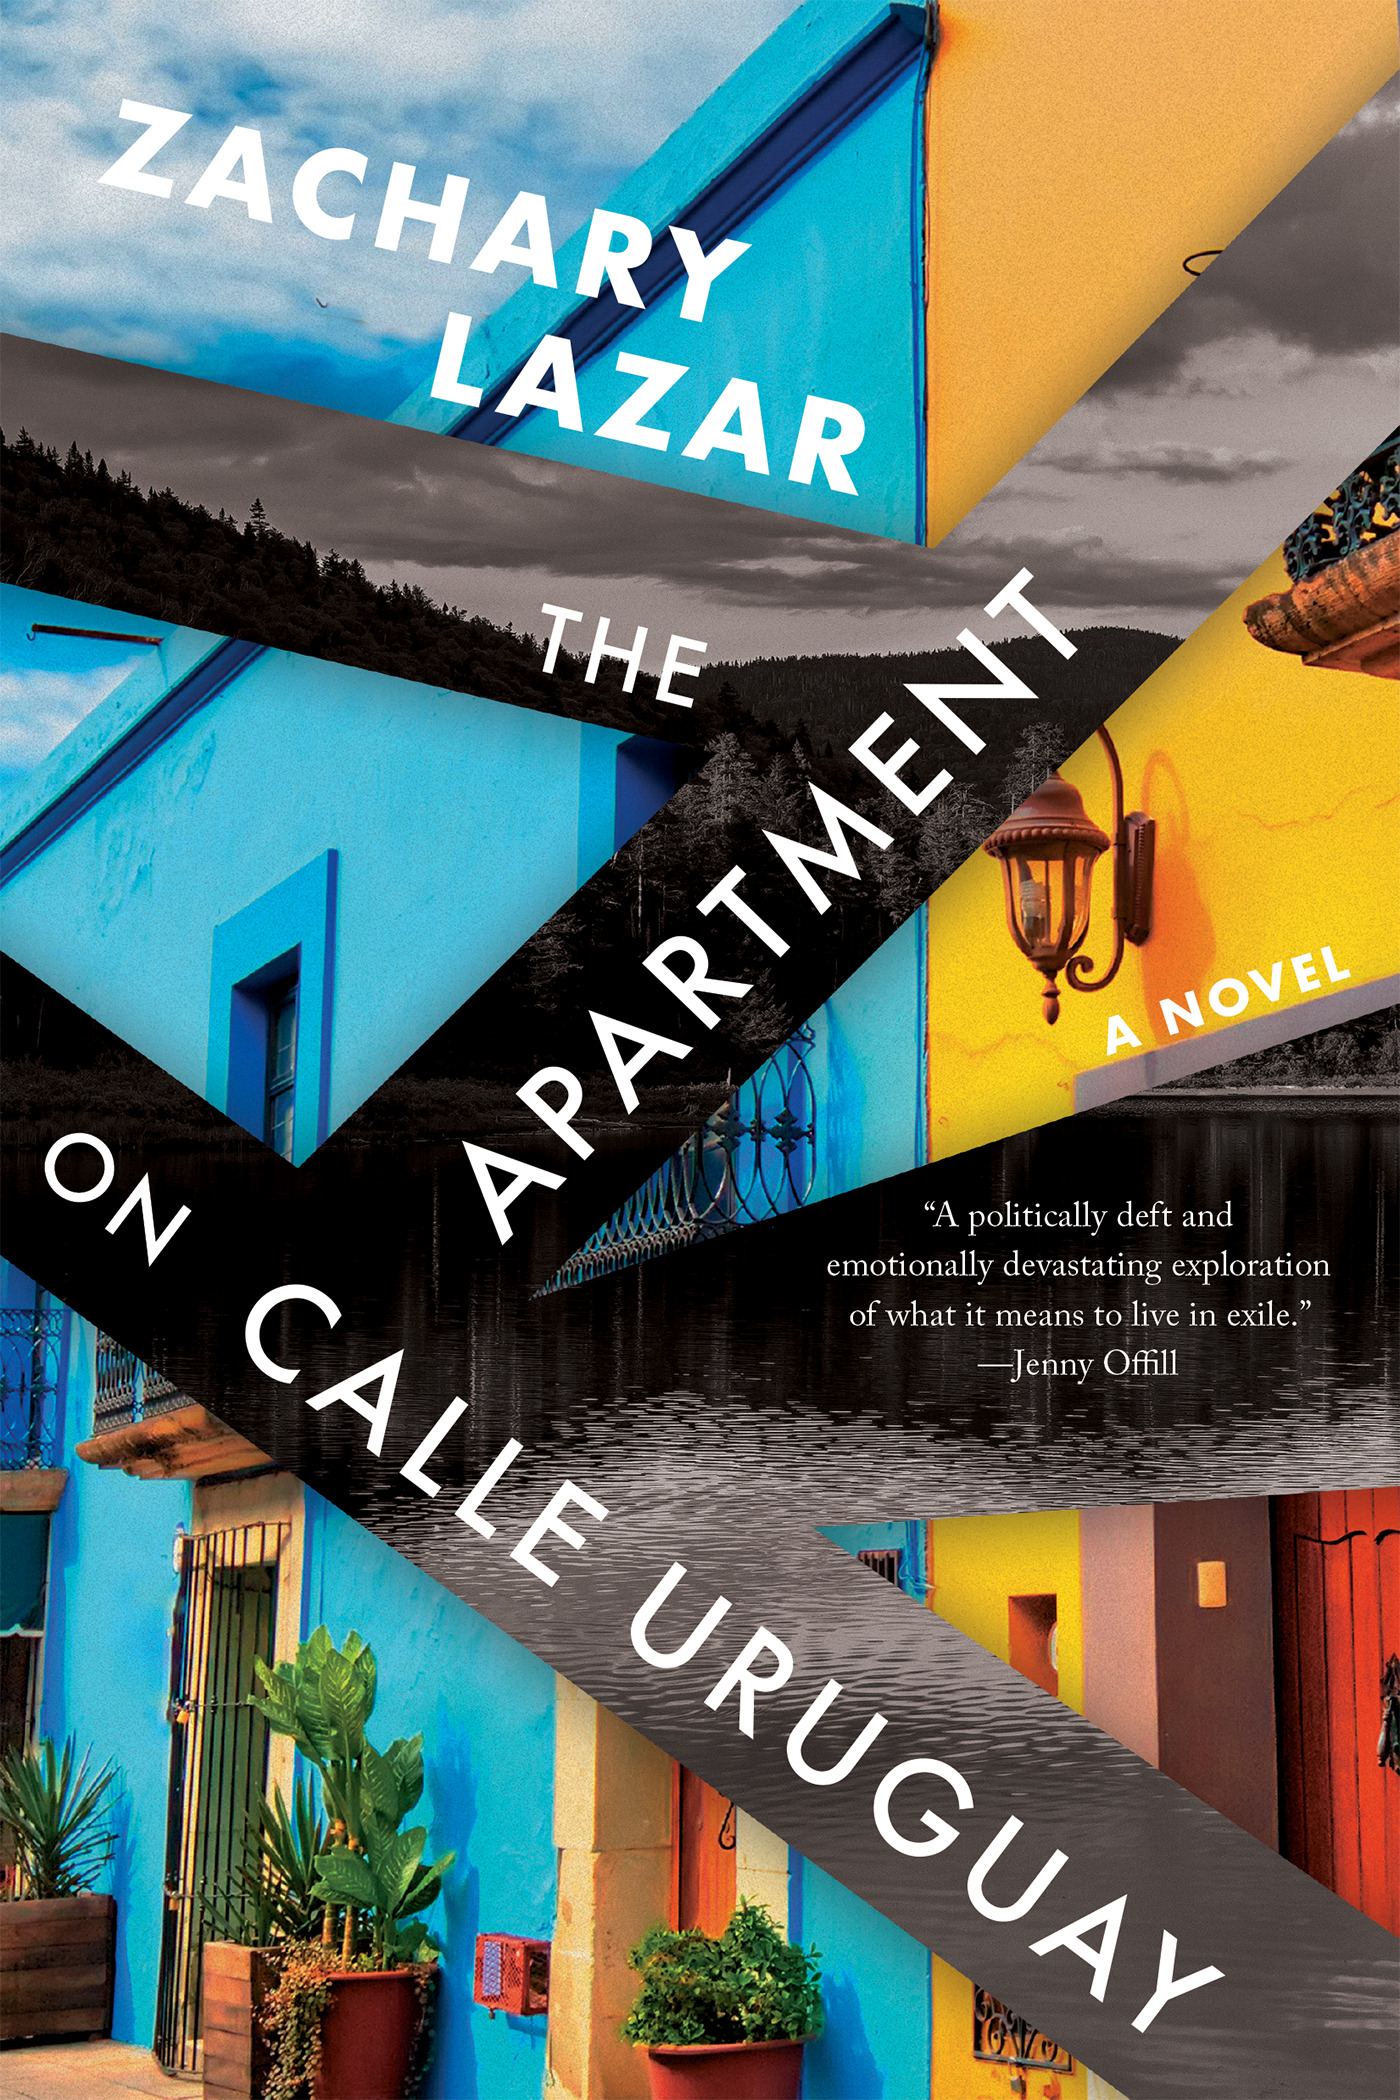 The Apartment on Calle Uruguay : A Novel | Lazar, Zachary